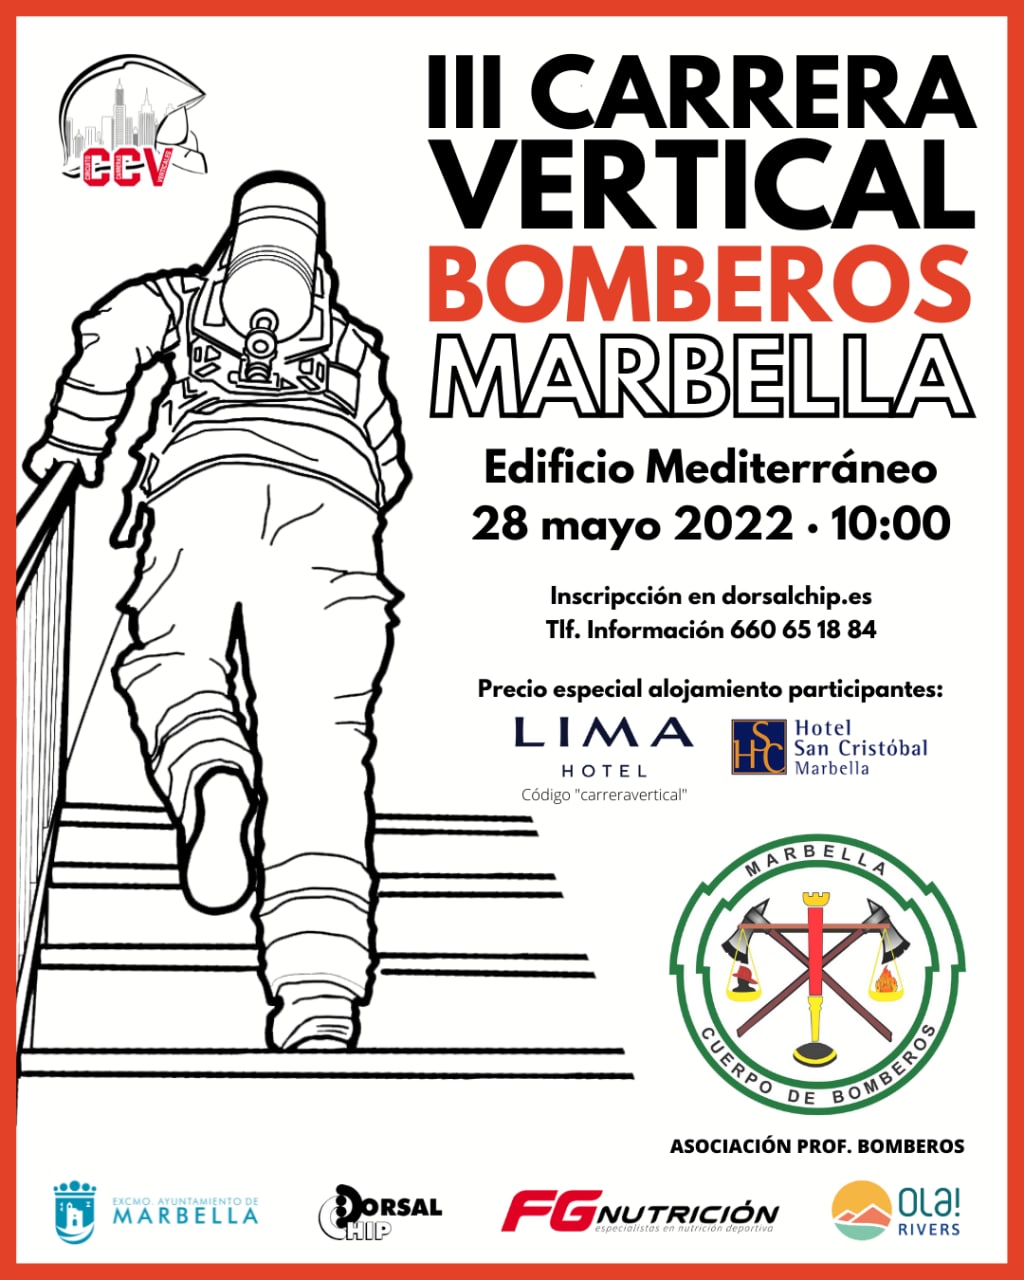 La III Carrera Vertical de Bomberos Marbella tendrá lugar el próximo 28 de mayo y reunirá a más de un centenar de participantes en dos categorías